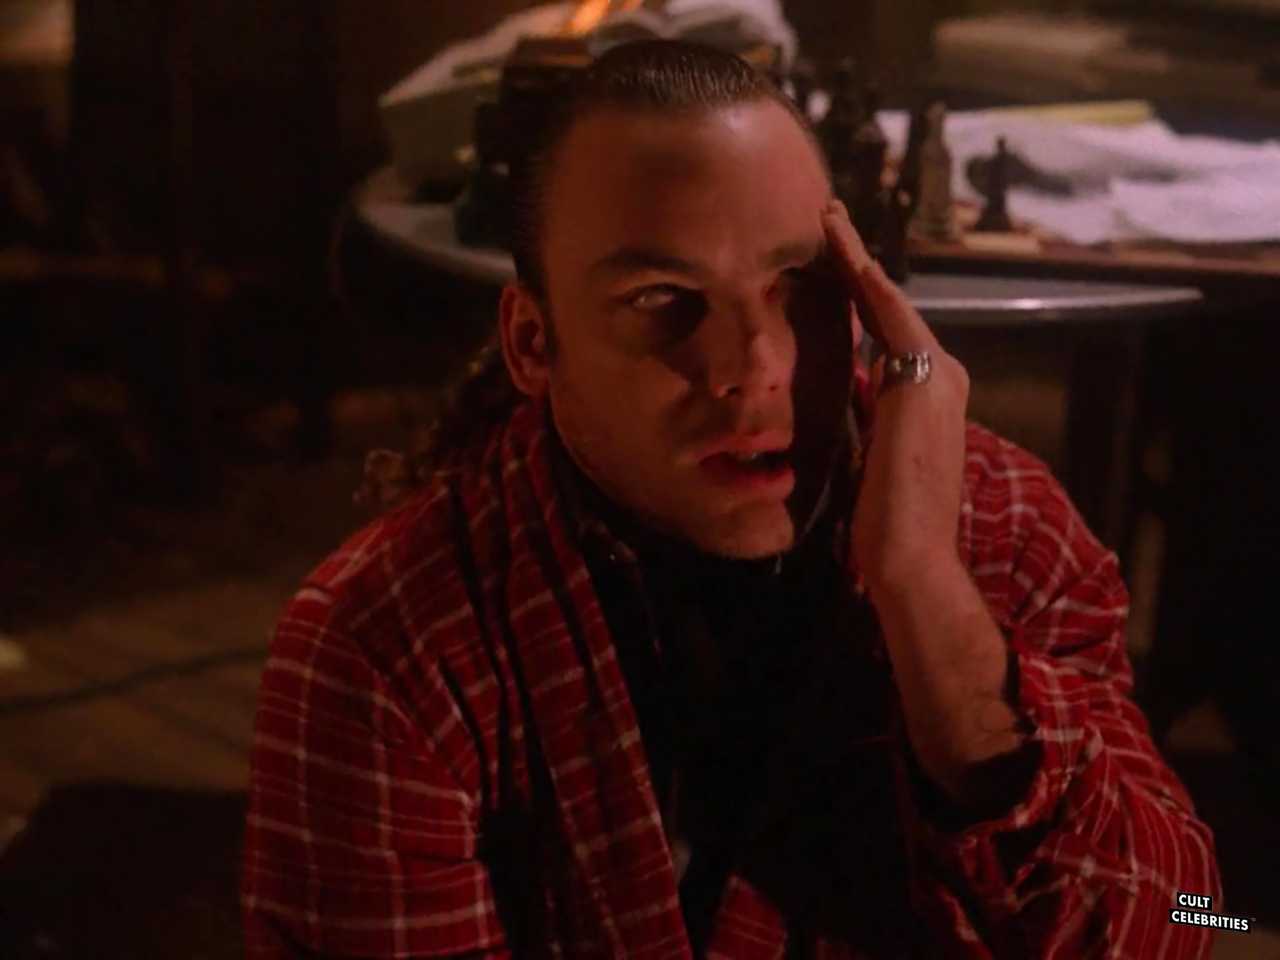 Eric DaRe in Twin Peaks (1990)